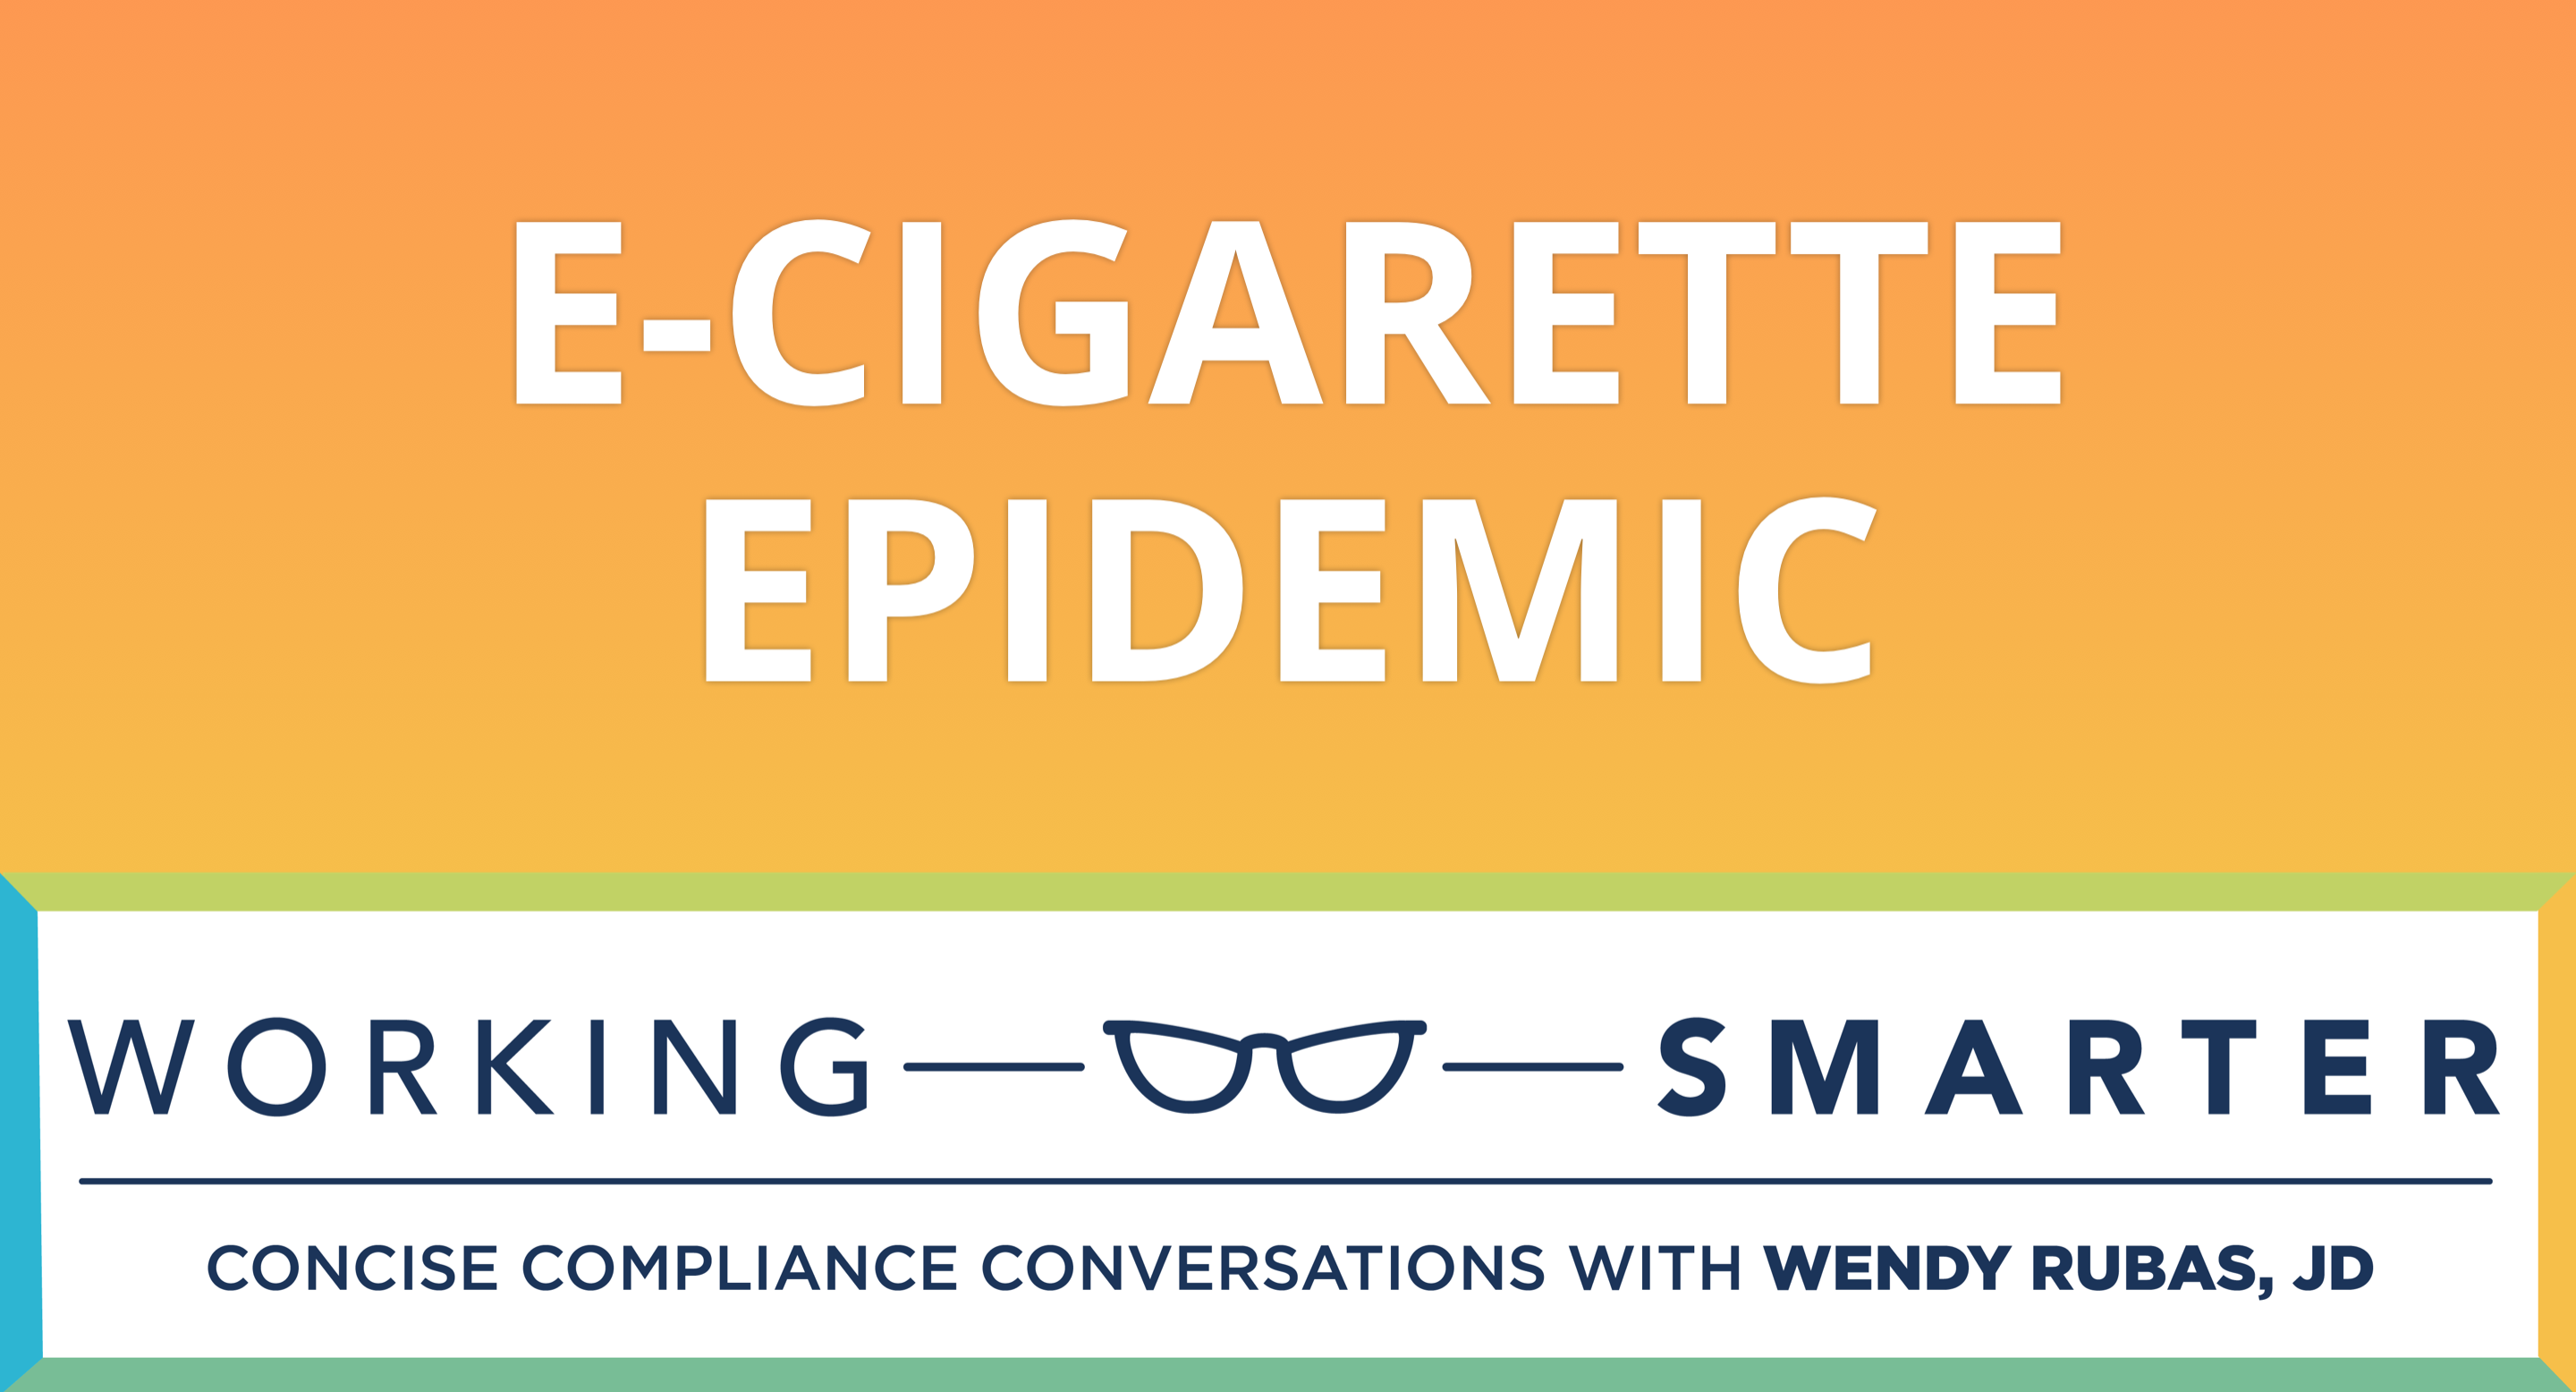 Working Smarter: E-Cigarette Epidemic